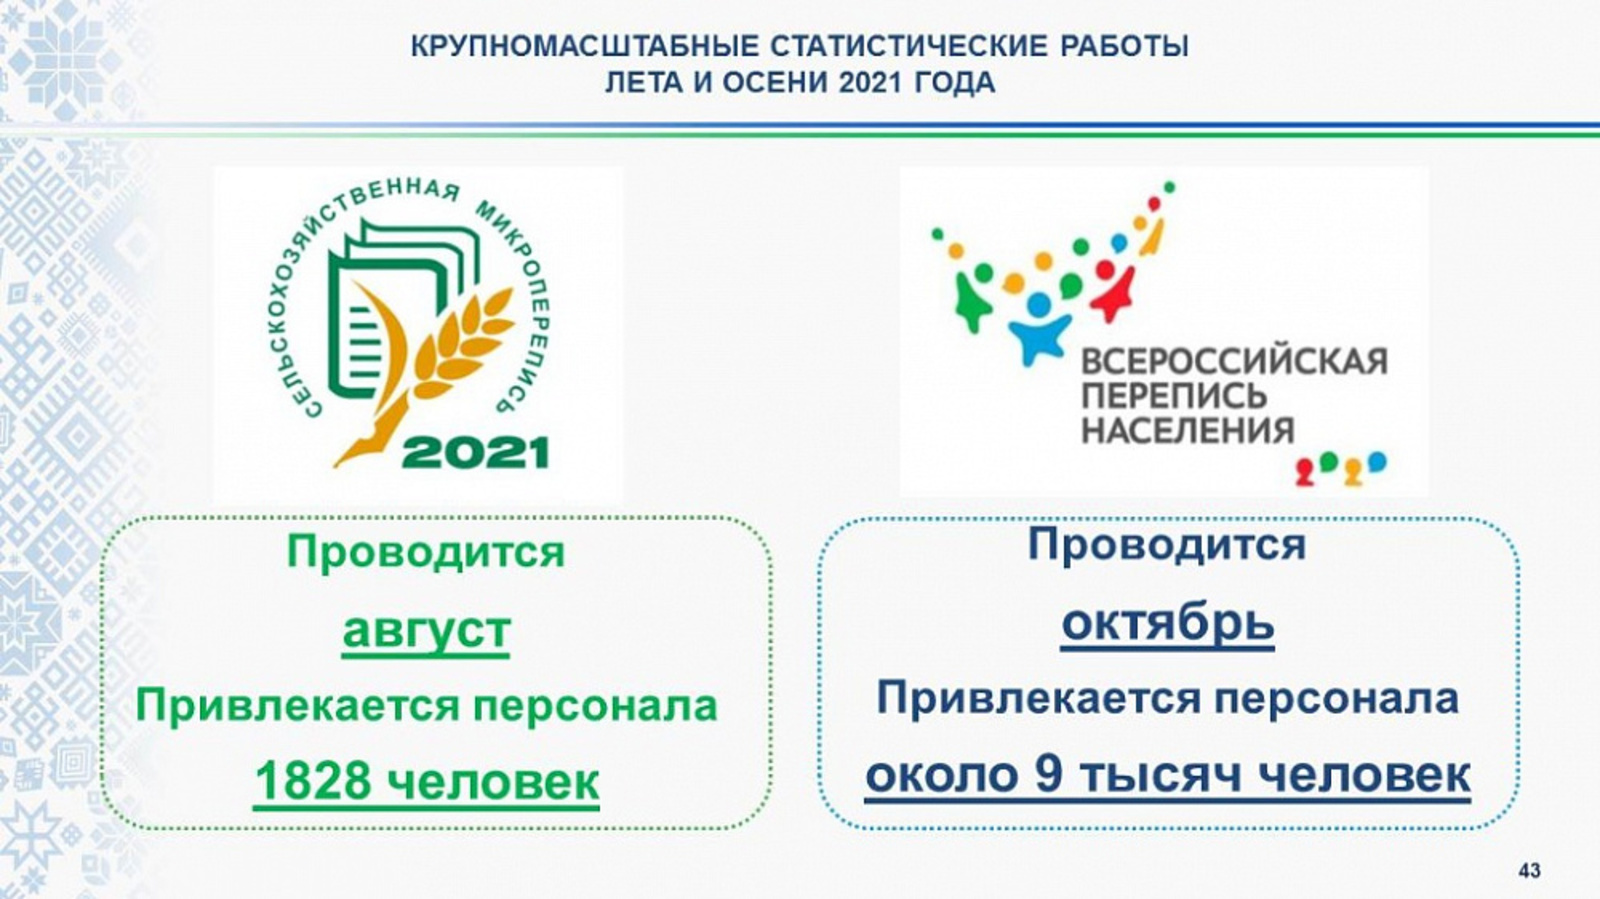 Жители Башкортостана смогут пройти перепись населения на портале Госуслуг